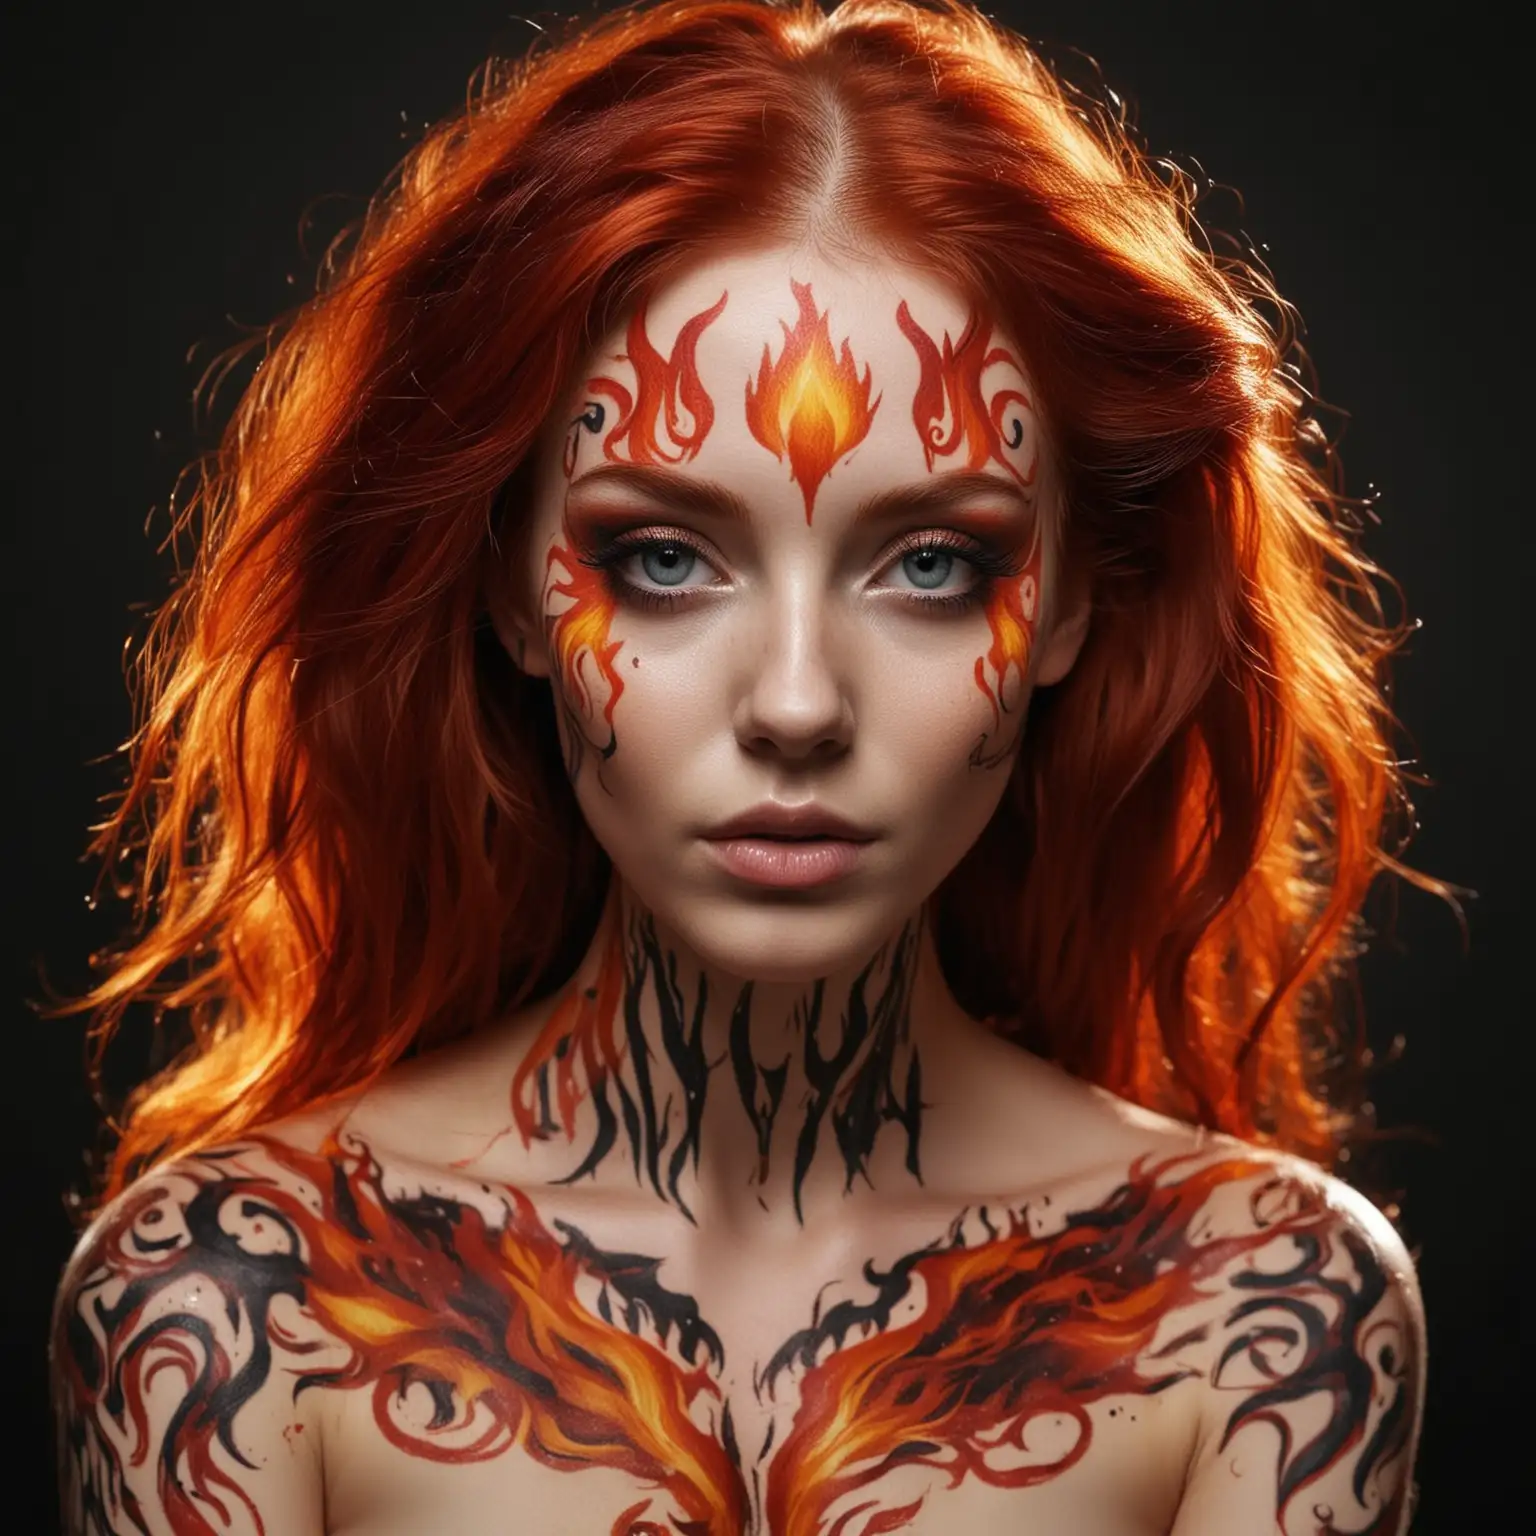  девушка с густыми красными волосами со светлой кожей на лице нарисован боди арт в виде пламени 
